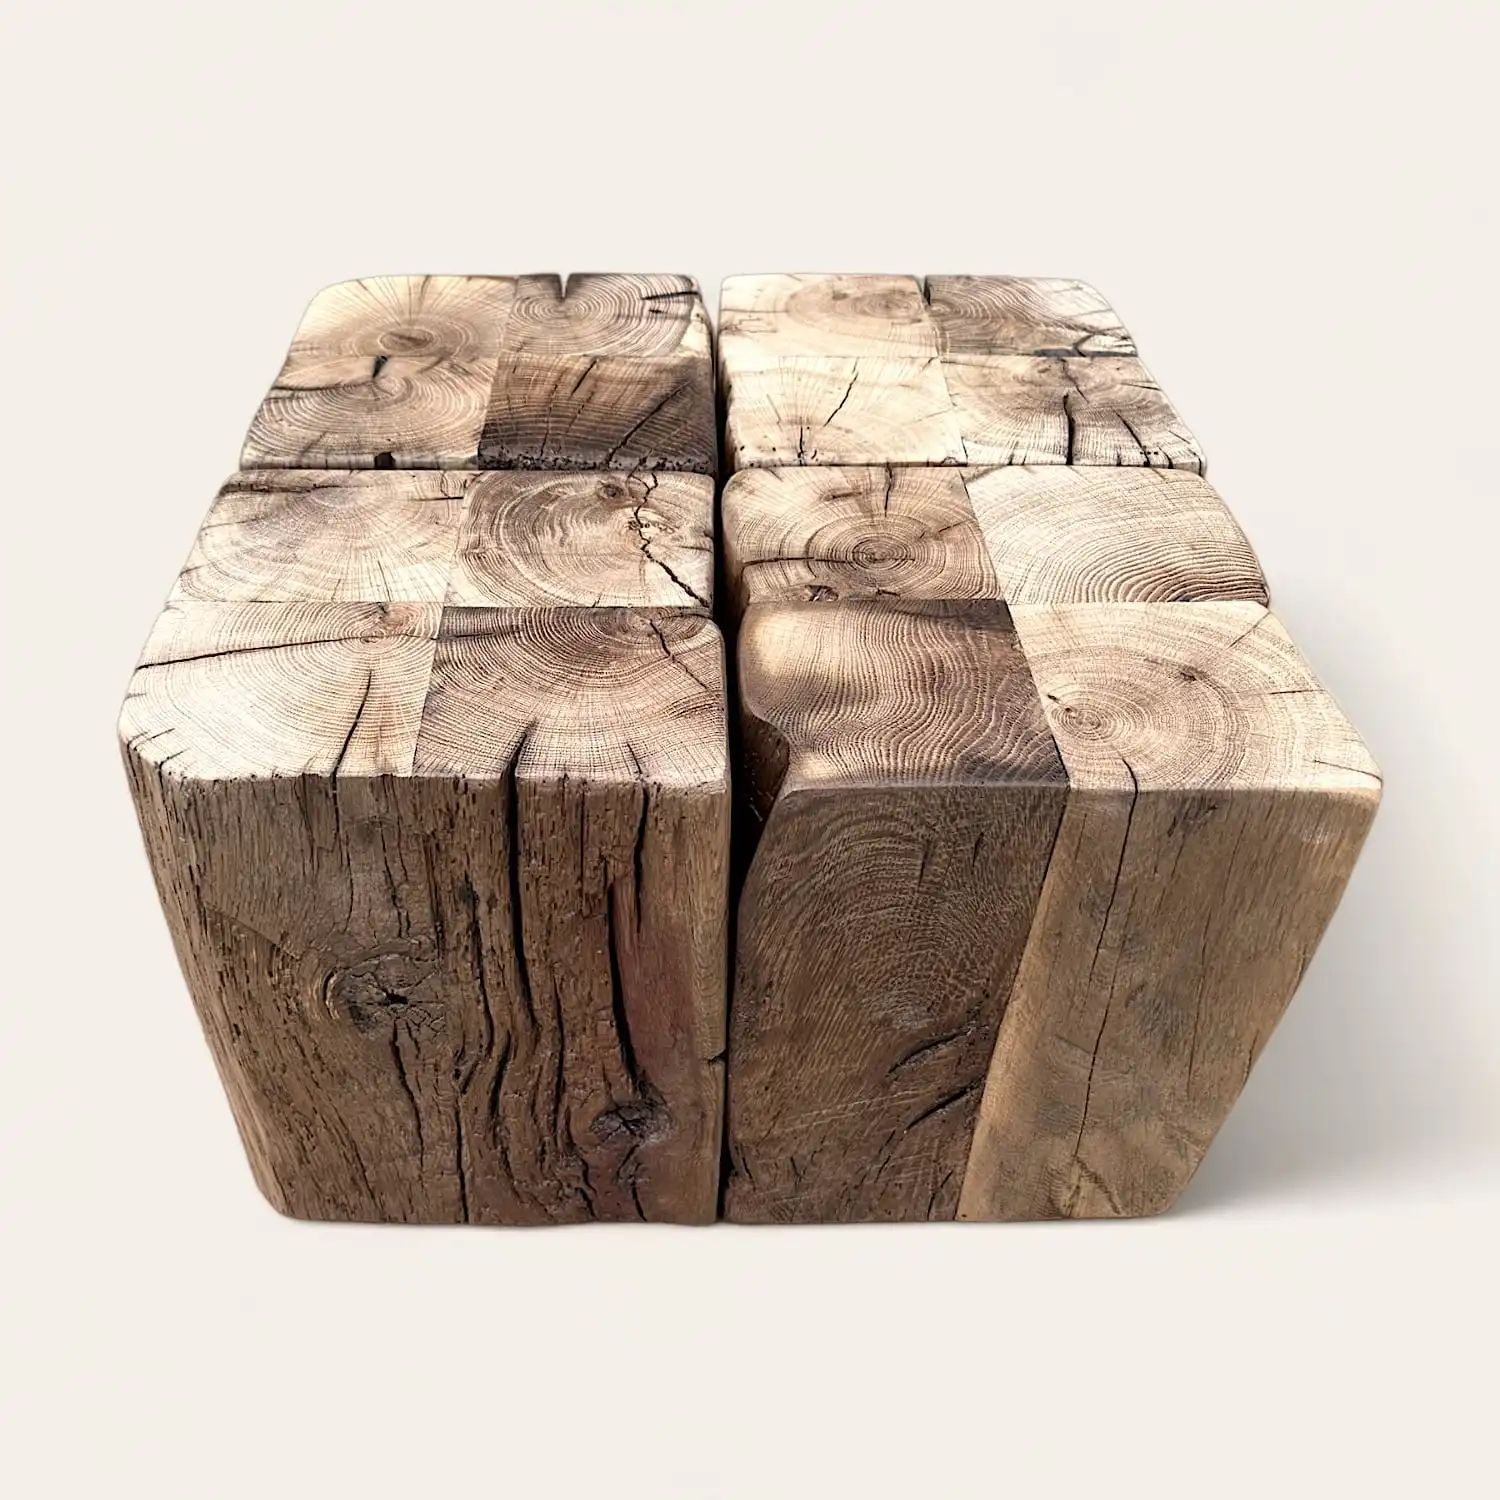  Table basse rustique cube en bois fissuré. 